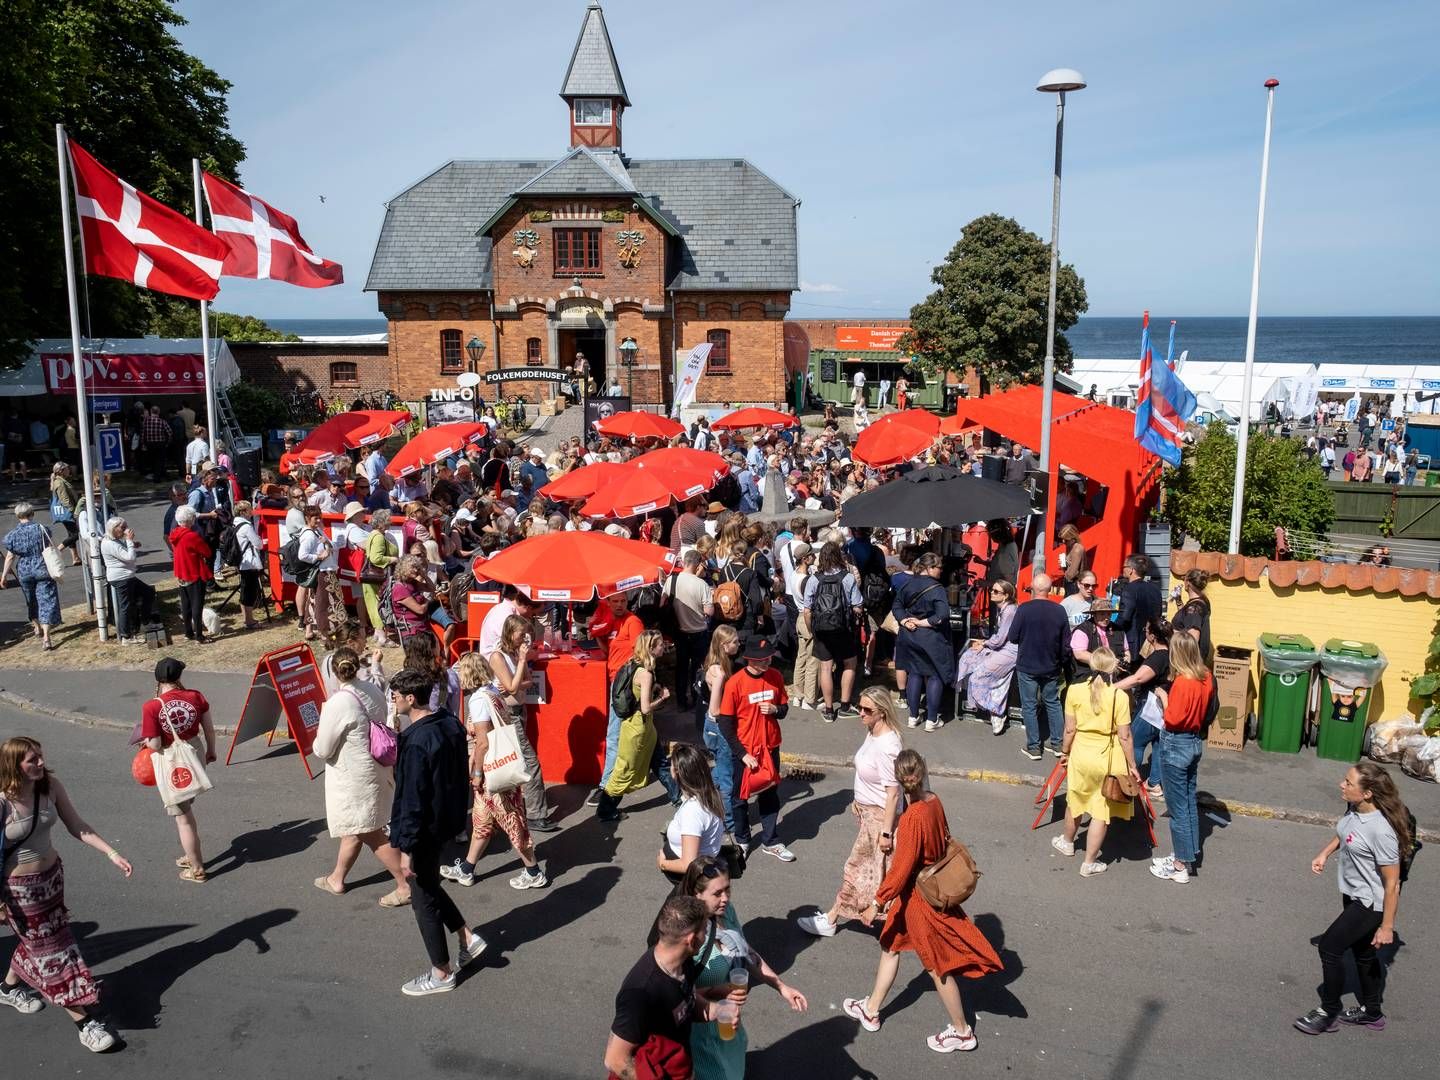 Folkemødet er tilbage og stadig vigtigt for danske virksomheders kommunikation. | Foto: Pelle Rink/Folkemødet/PR